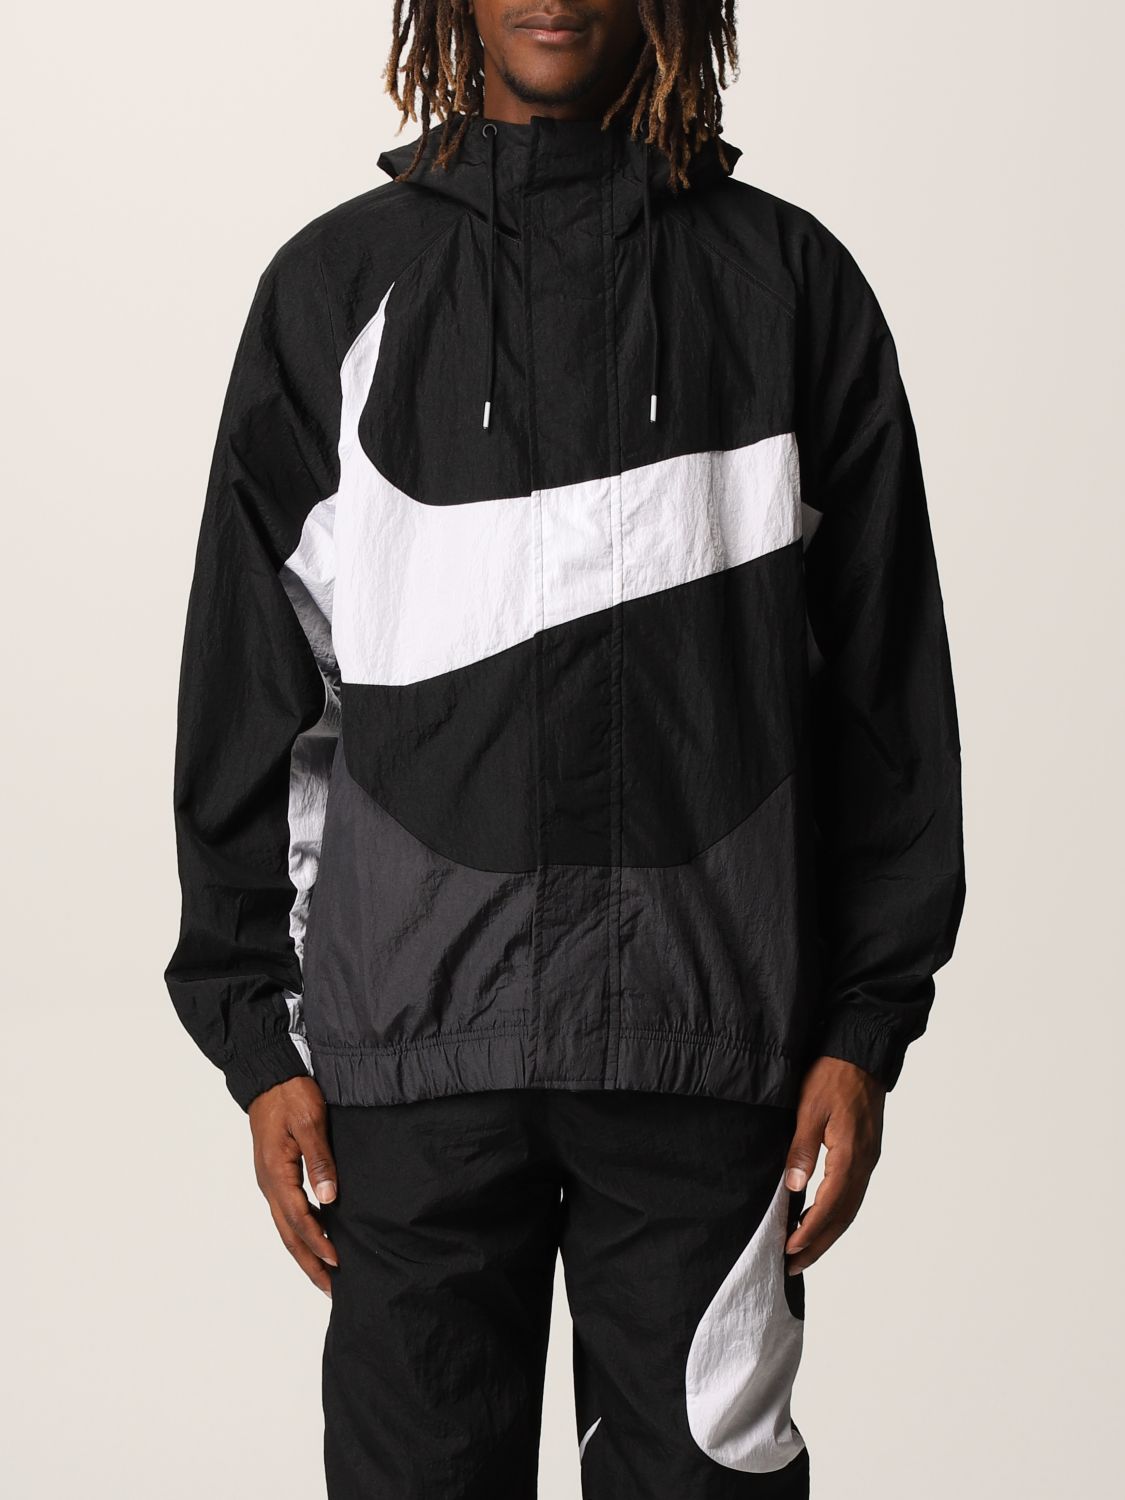 NIKE: nylon jacket with maxi Swoosh logo - Black | Nike jacket